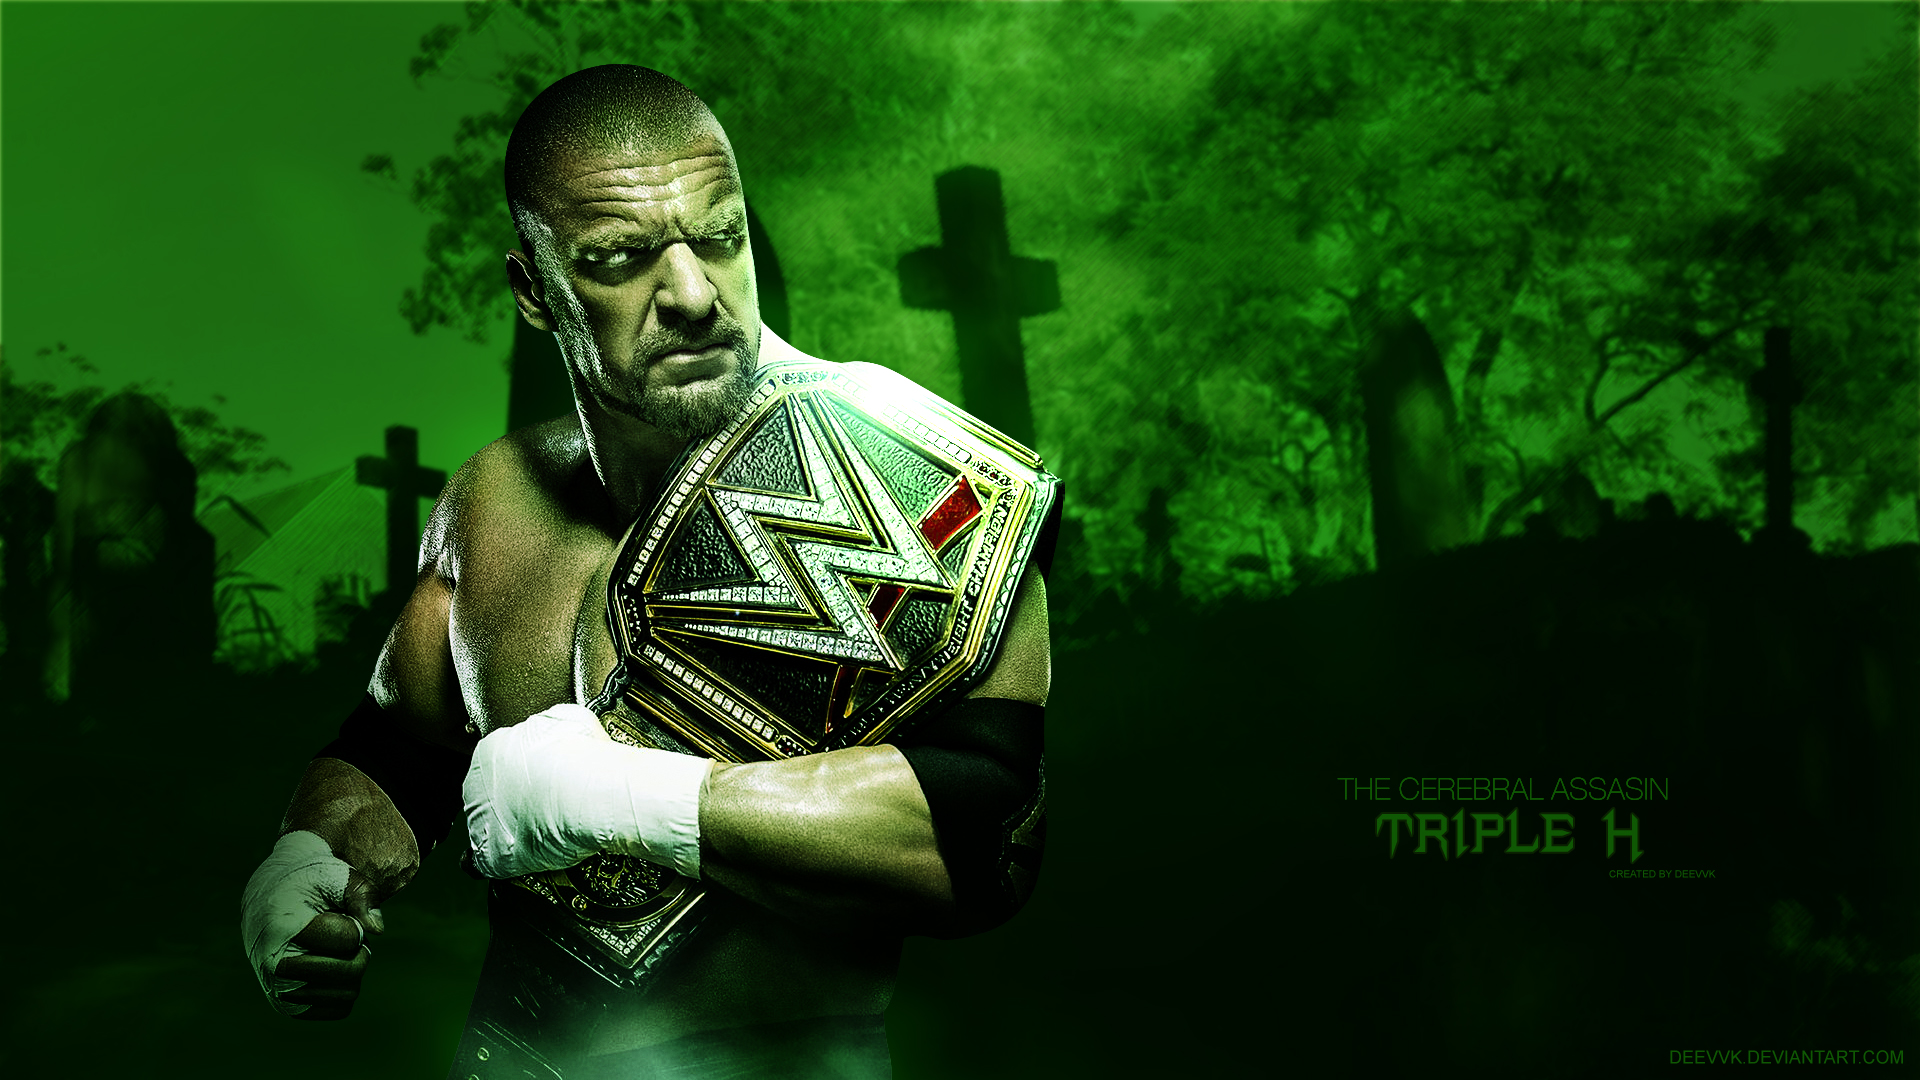 Triple H Wwe Champion HD Wallpaper By Deevvk On